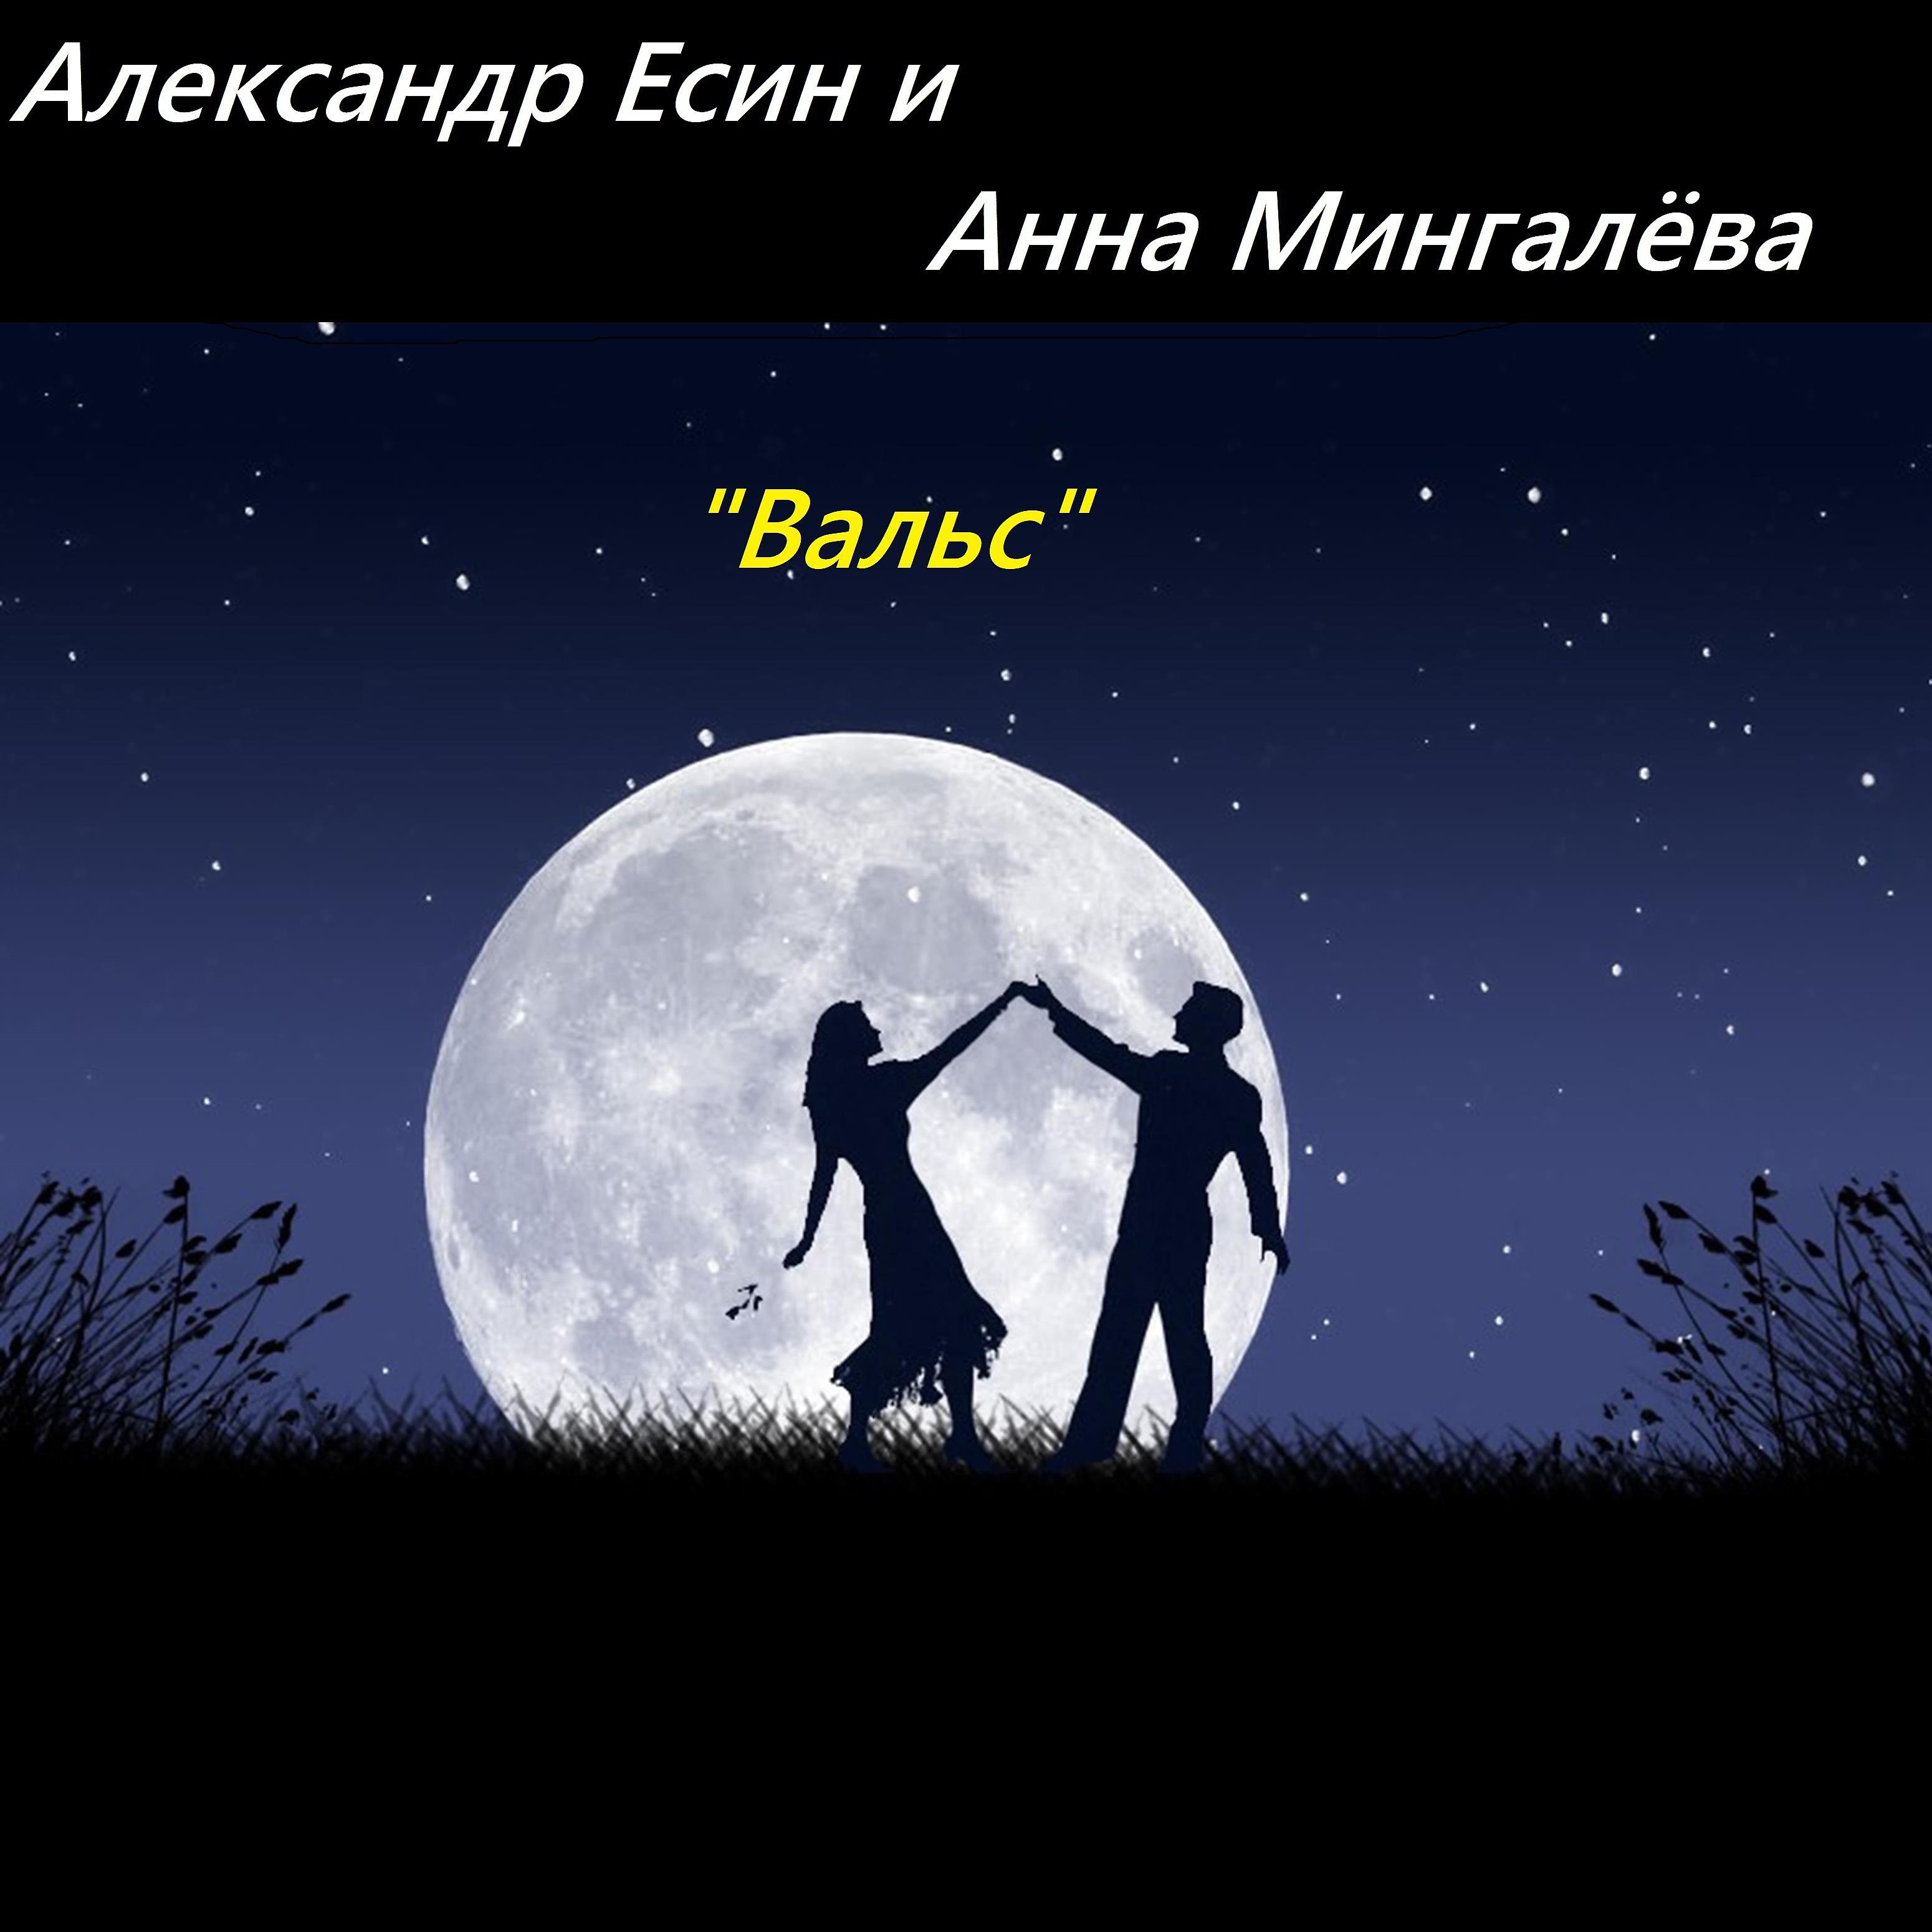 23 апреля день свиданий под луной. Пара на фоне Луны. Принятие настоящего. Два силуэта на фоне Луны. Луна для влюбленных.